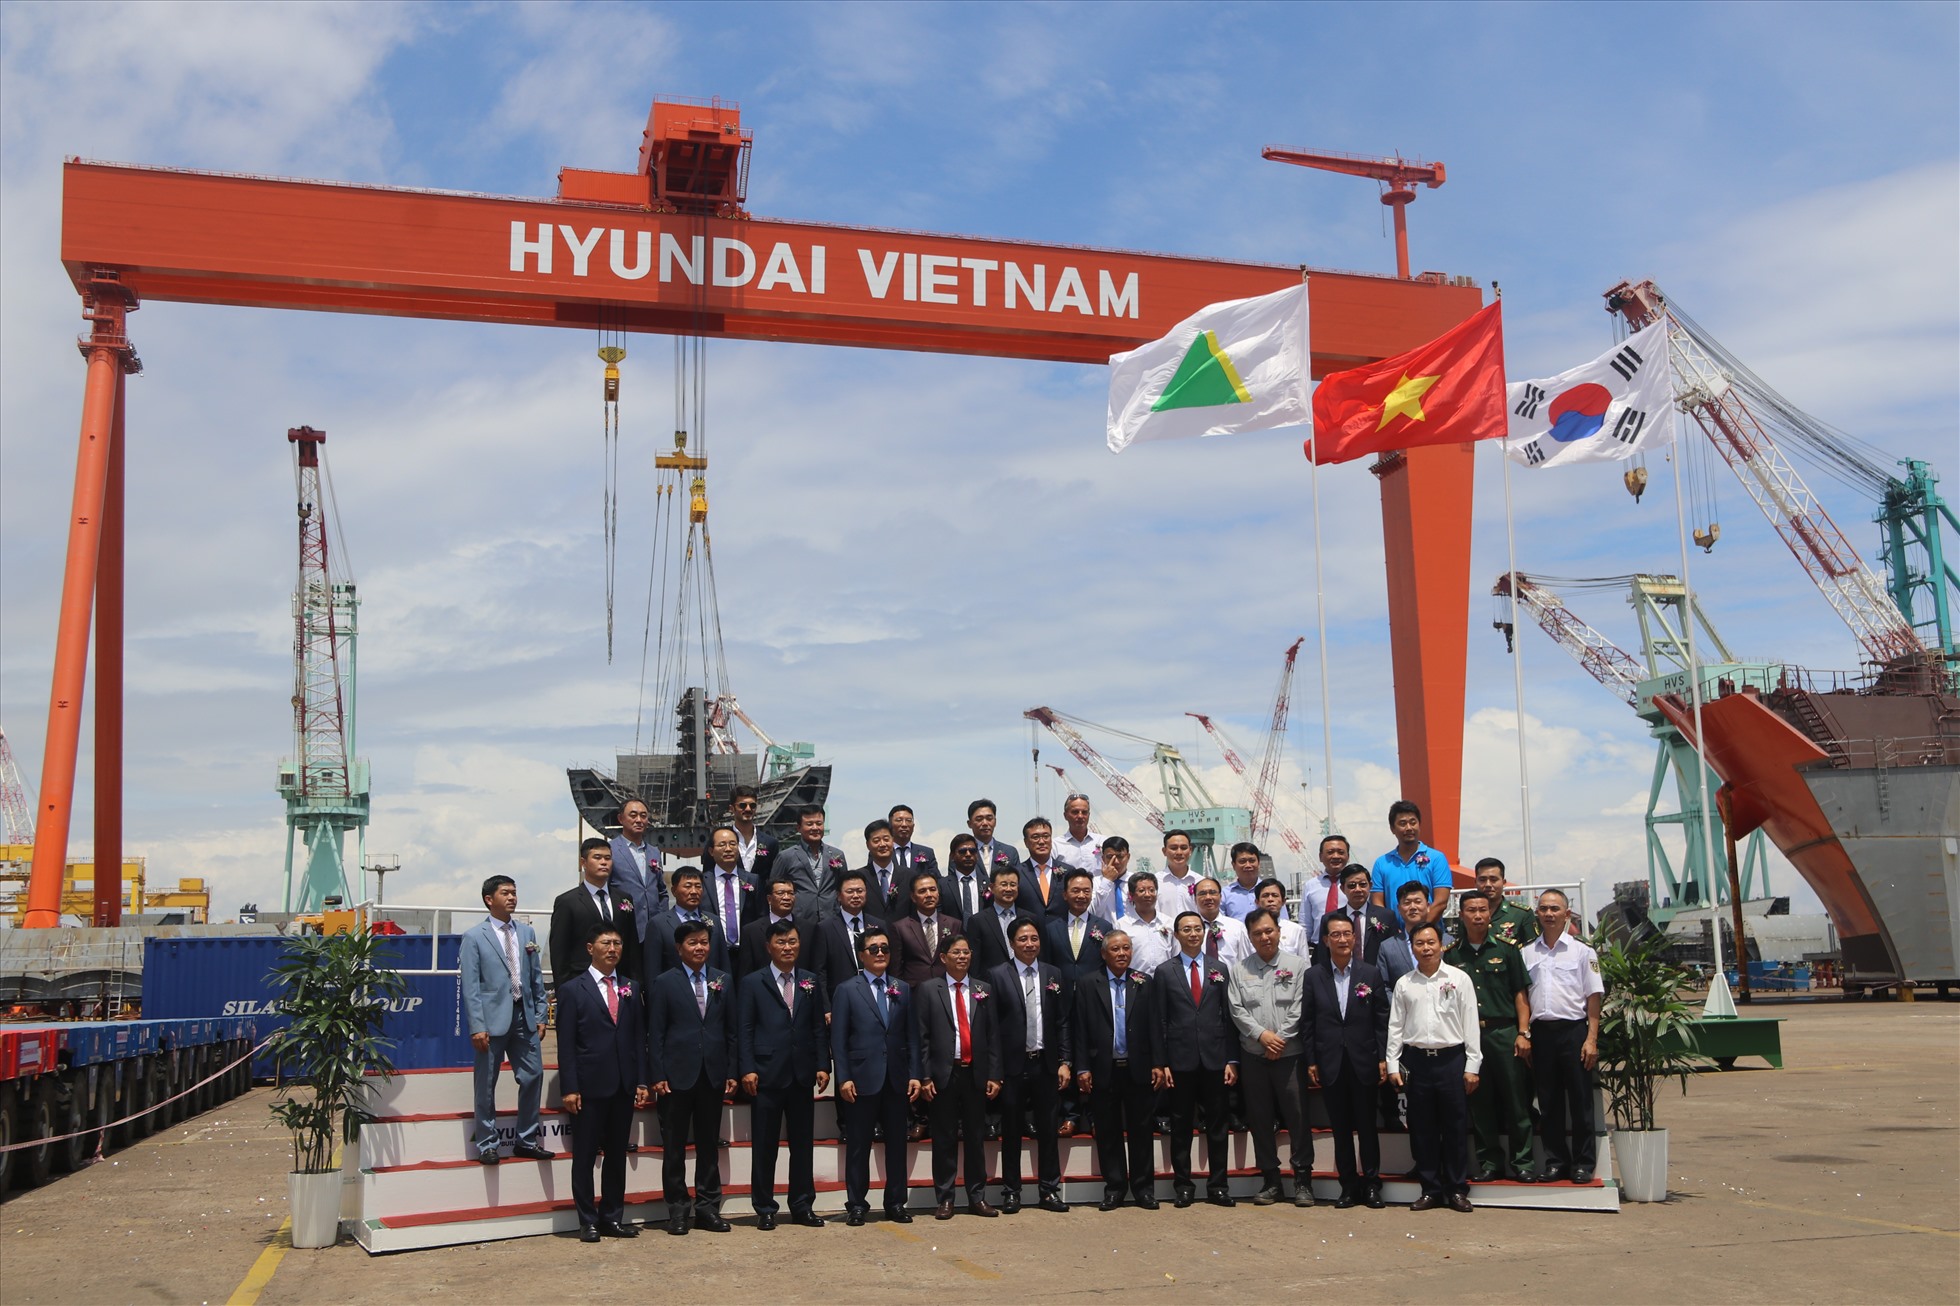 Cẩu trục 700 tấn còn gọi là “Goliath Crane” được vận hành ghi dấu móc quan trọng cho thấy bước tiến mới của Hyundai Việt Nam. Ảnh: P.Linh